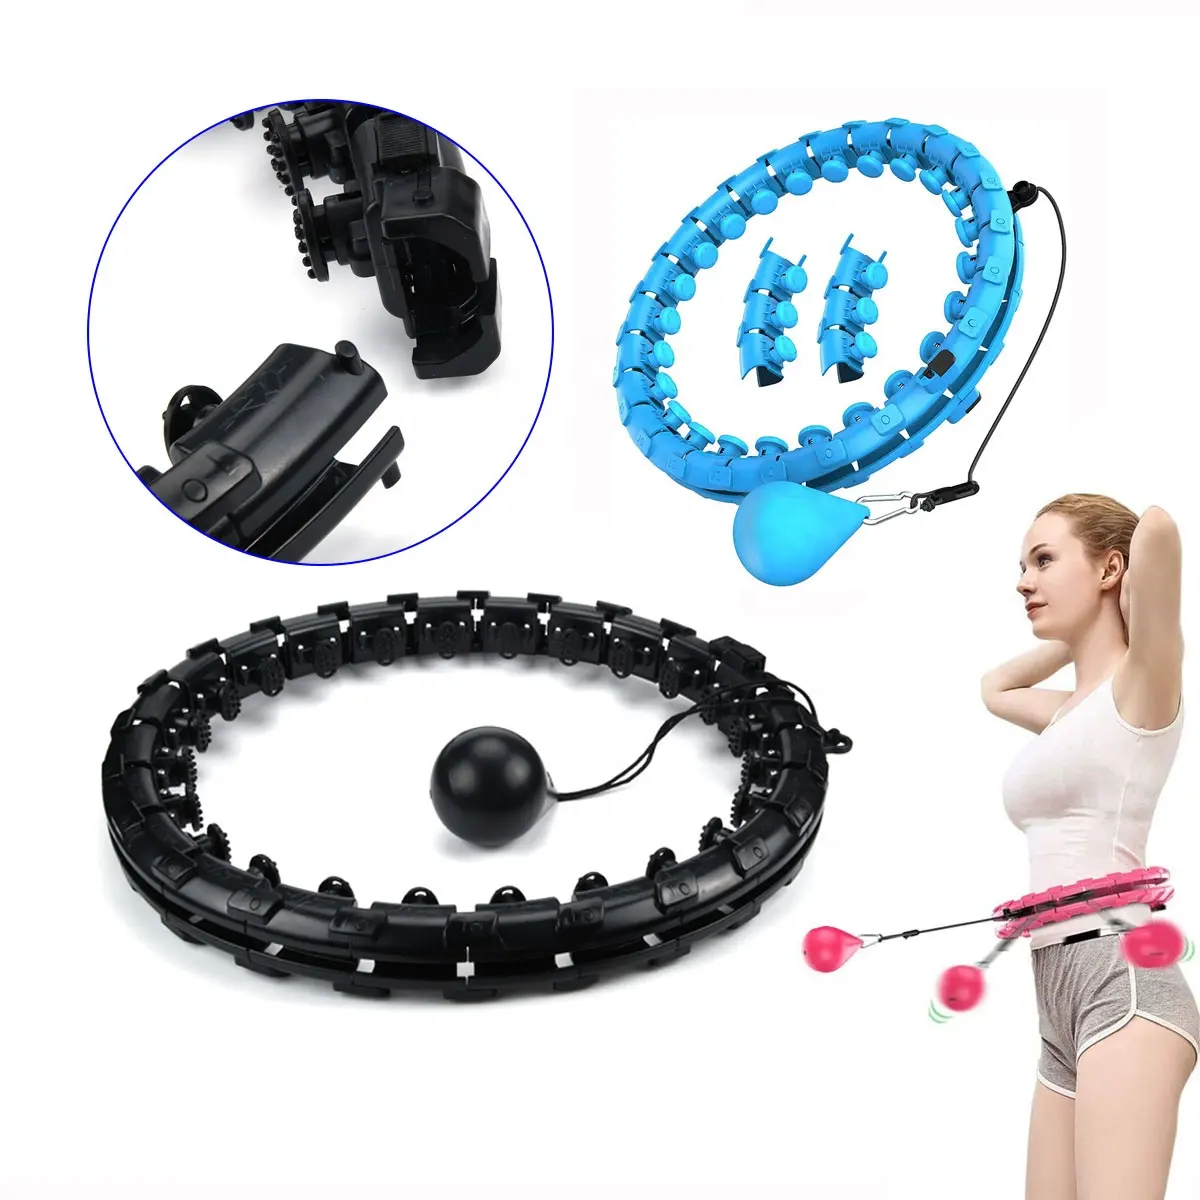 24, 28, 32 abnehmbare Knoten gewichteter Hula Fitness-Hoop Erwachsene Gewichtsabnahme Smart Fitness-Übung Hoop für Damen Bauchtraining